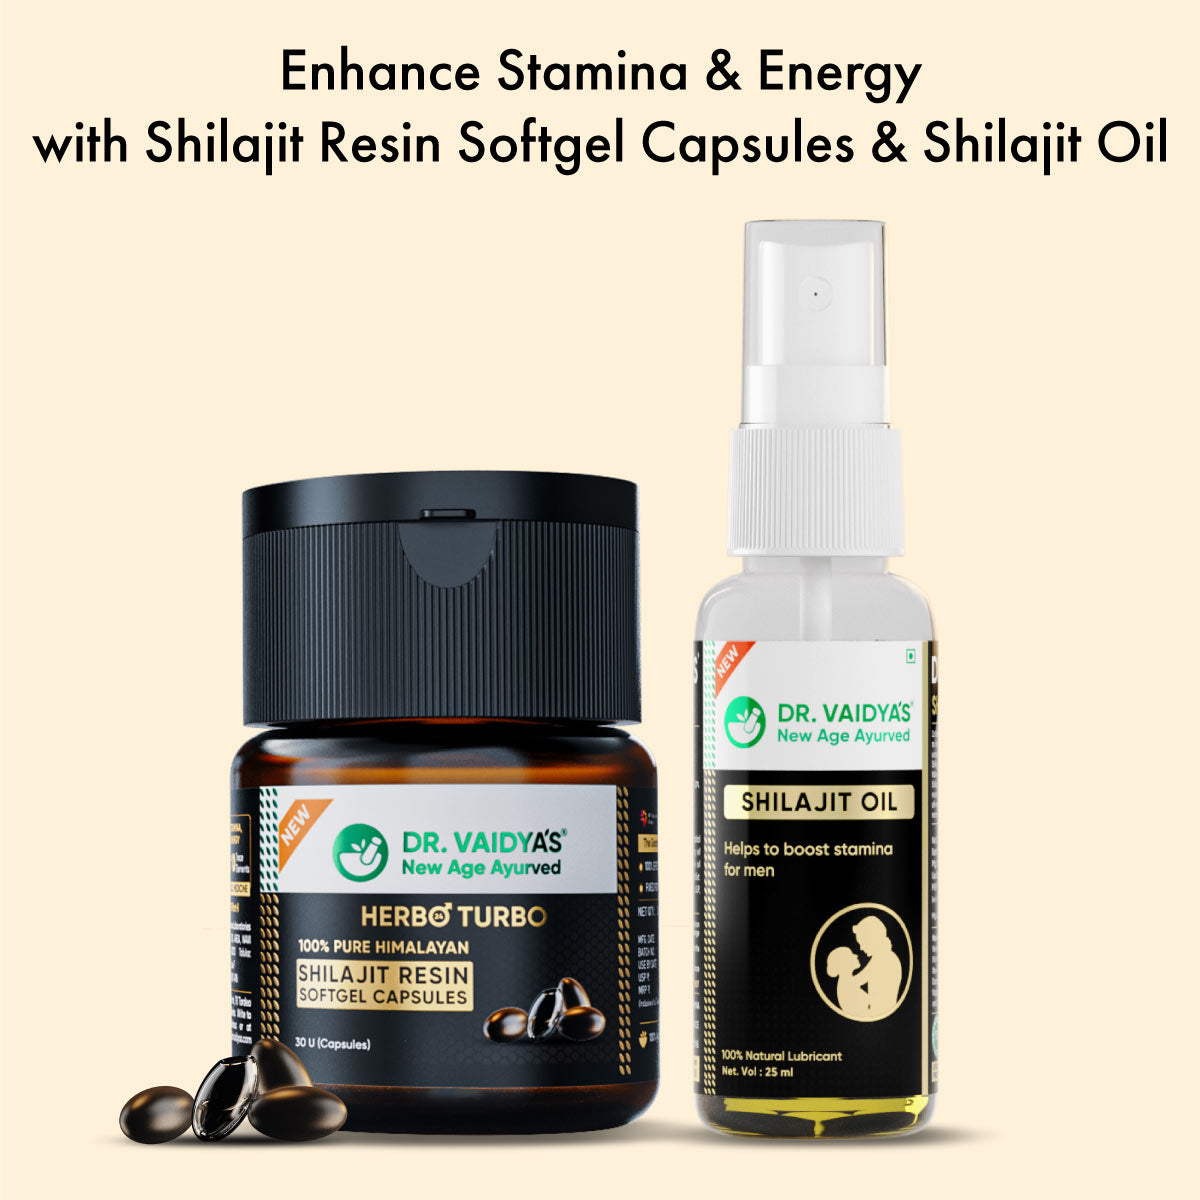 Herbo24Turbo Shilajit Resin SoftGel Capsules + Shilajit Oil FREE